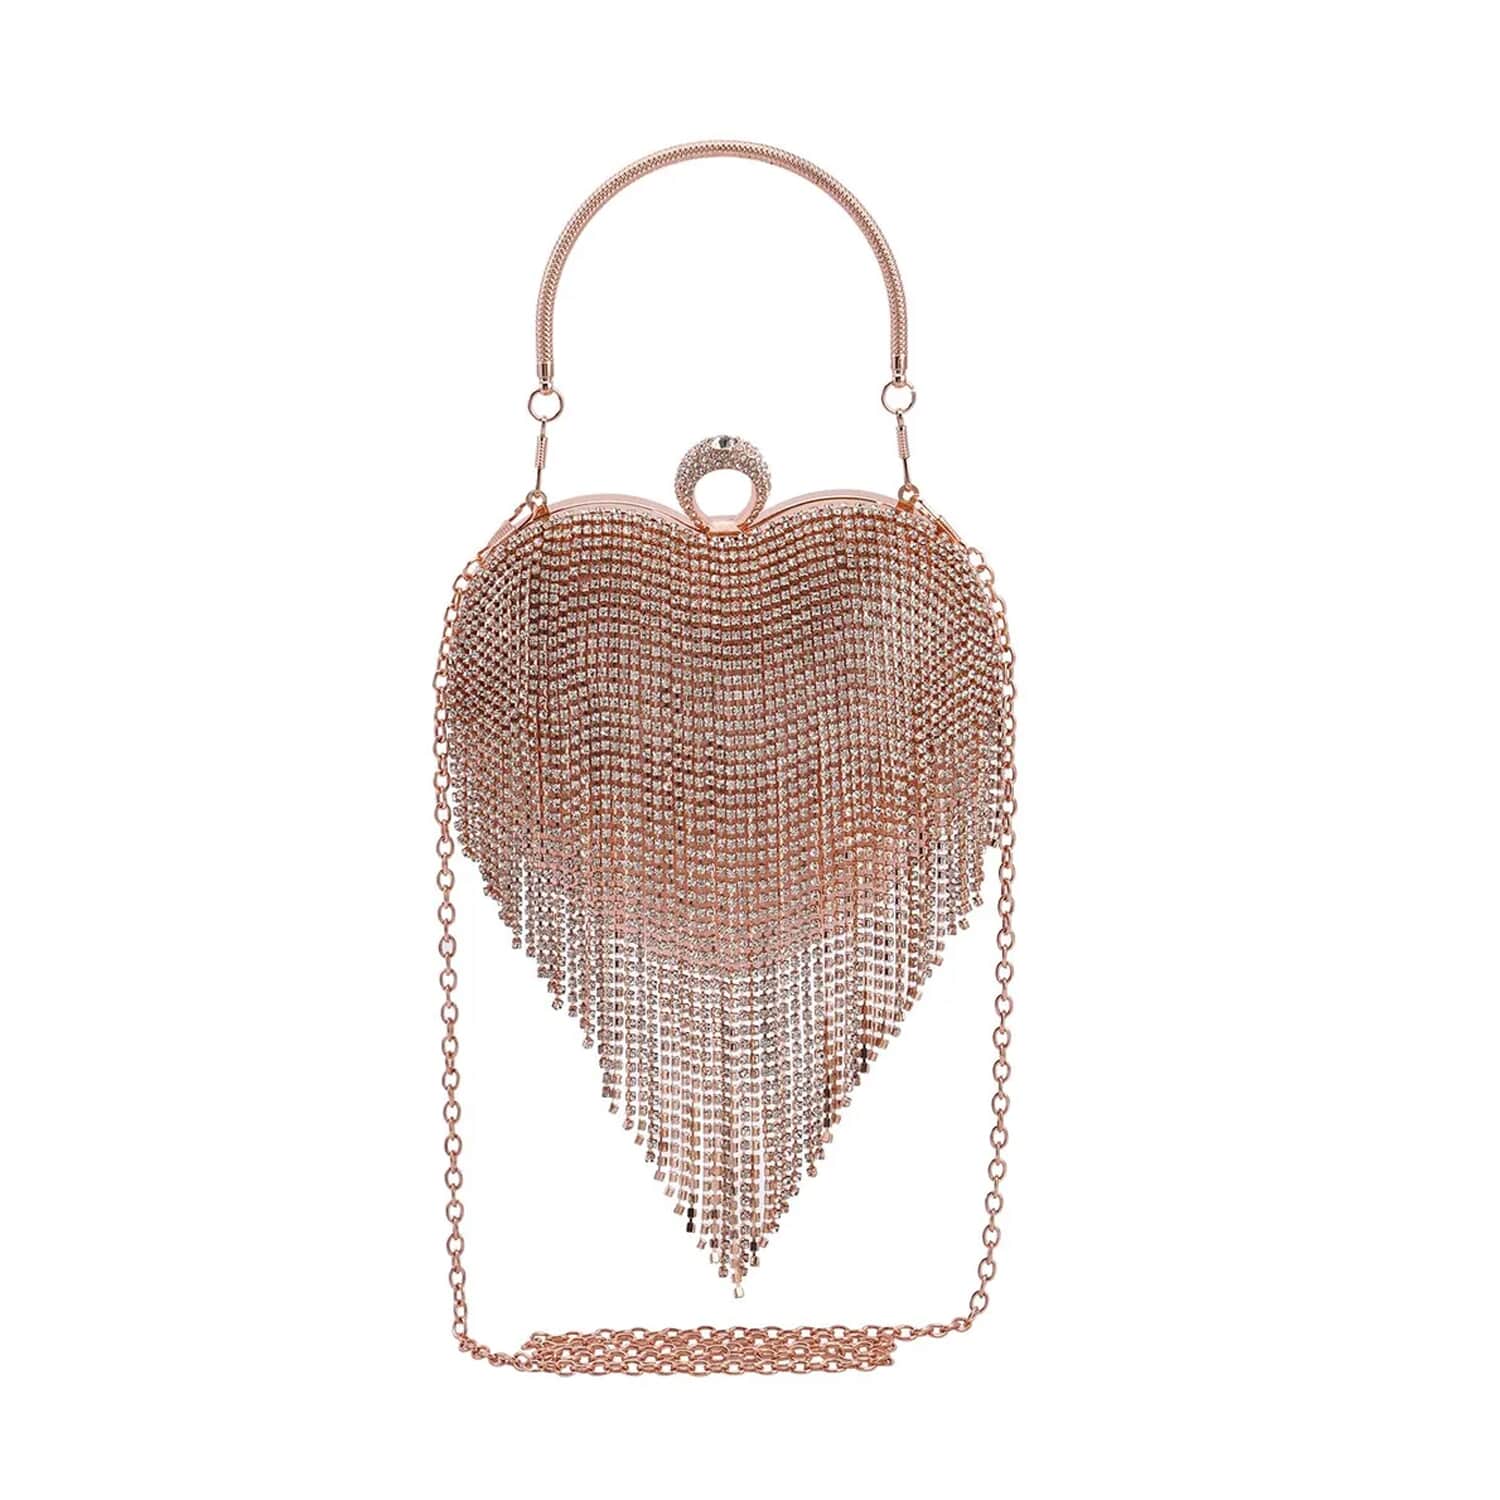 Dune Evander Embellished Clutch Bag, Silver at John Lewis & Partners